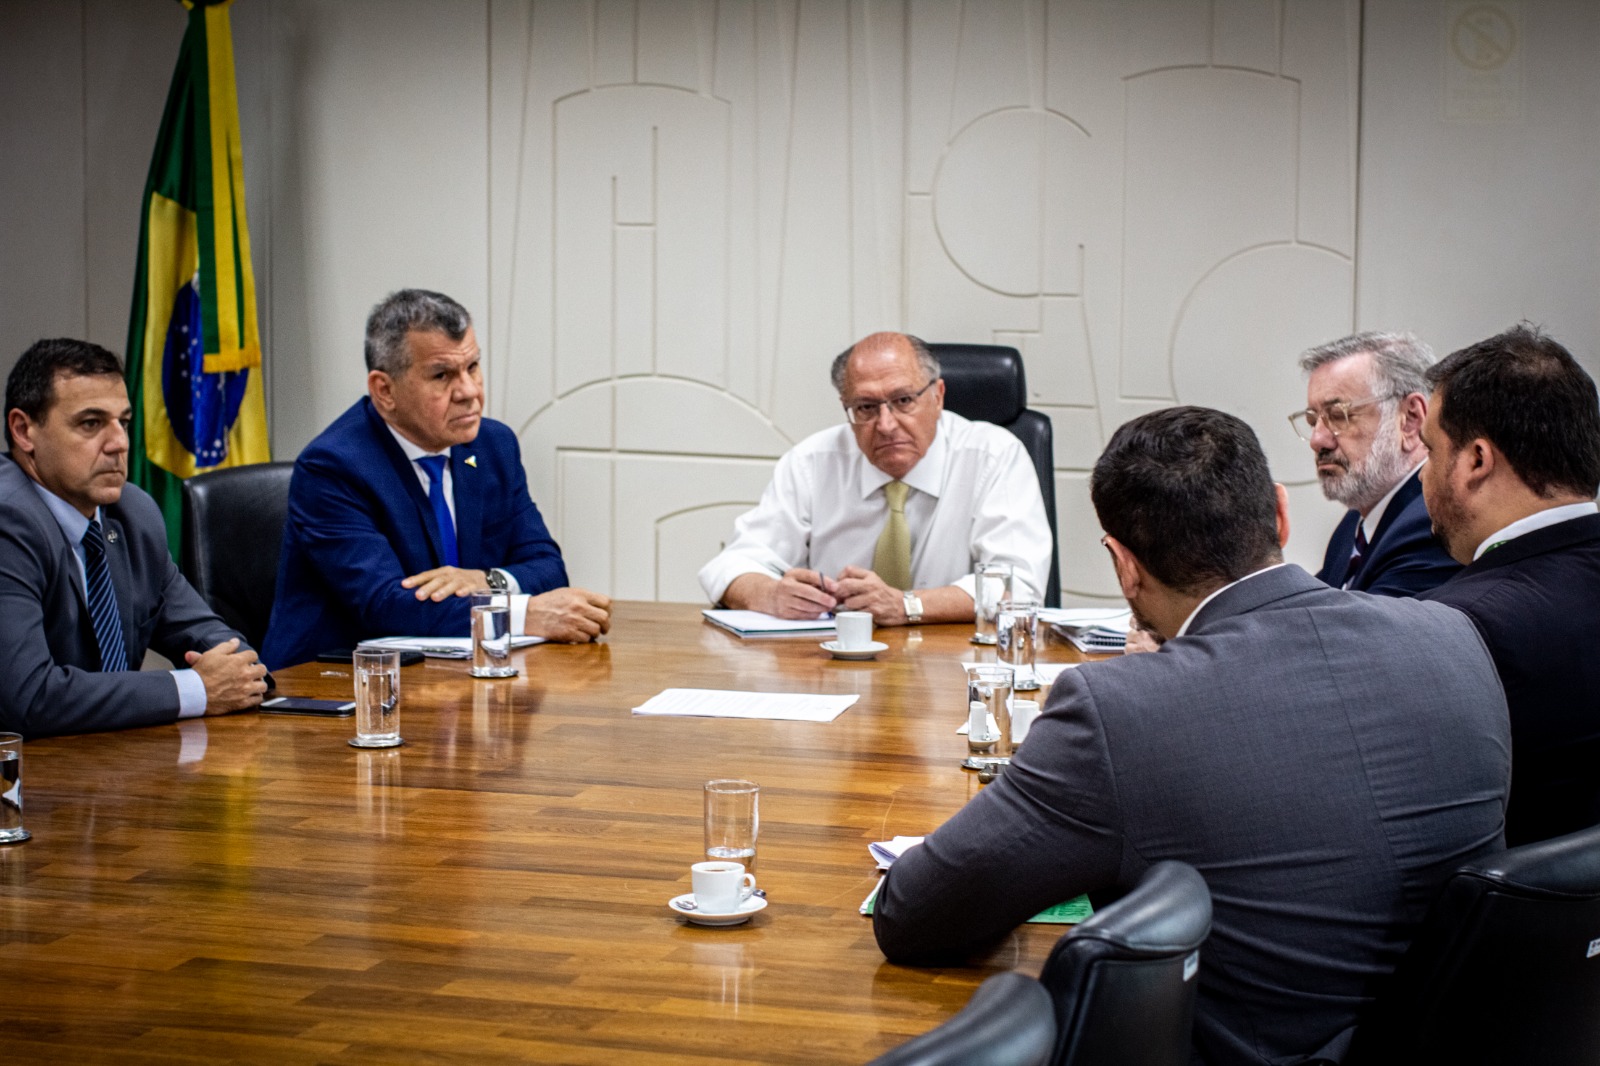 O superintendente da Suframa, Bosco Saraiva, chegou em Brasília nesta terça-feira (13) para cumprir uma agenda de reuniões com o ministro da Indústria e Comércio e vice-presidente, Geraldo Alckmin Foto: Divulgação/MDIC